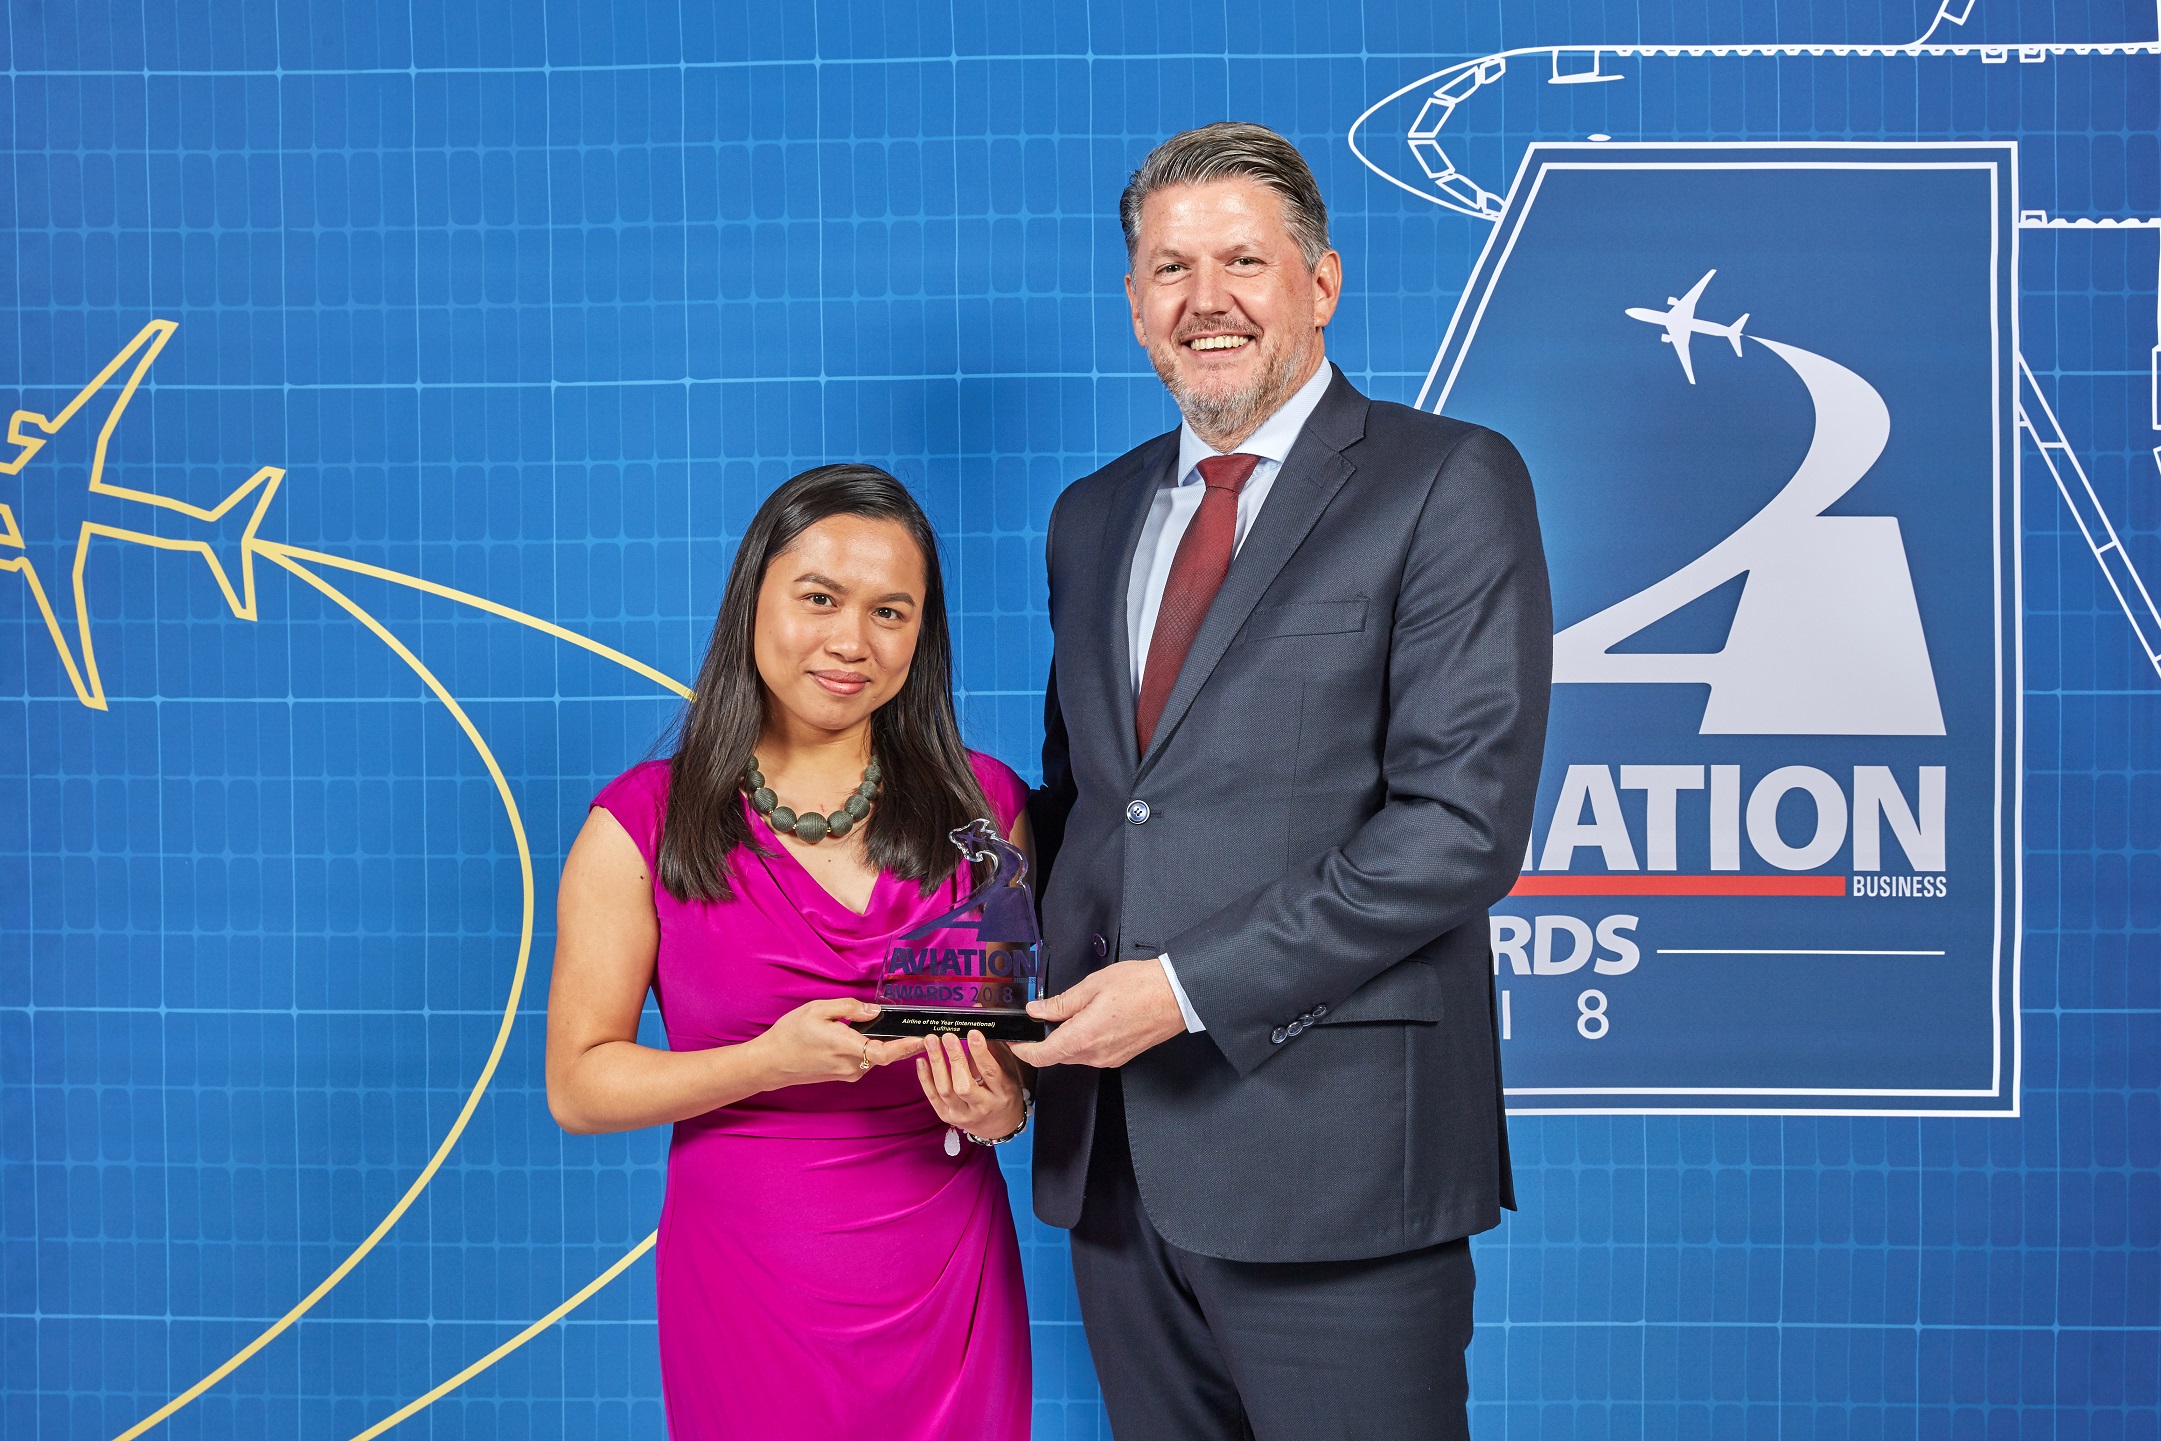 لوفتهانزا تحصد لقب أفضل خطوط جوية دولية للعام من جوائز أعمال الطيران 2018"